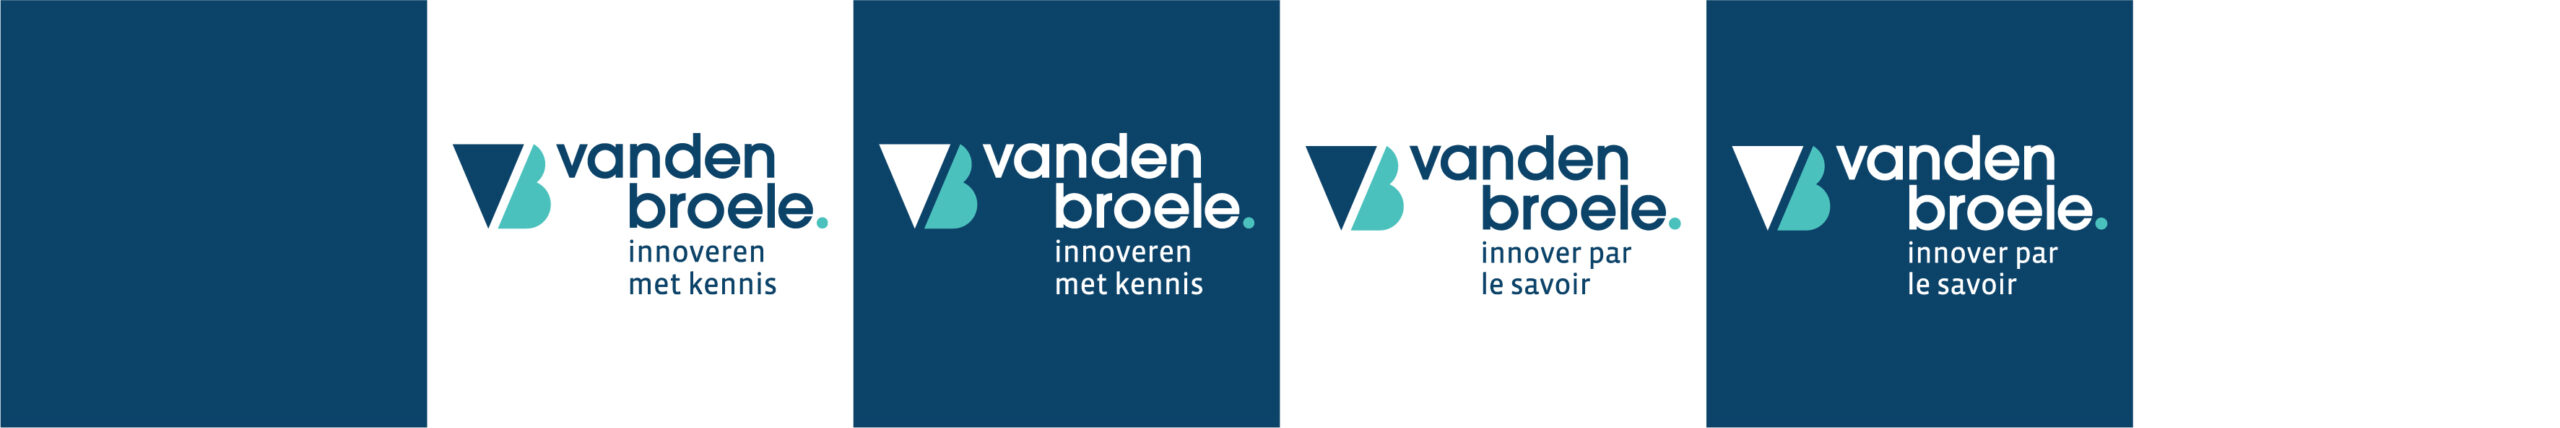 Het logo van Vanden Broele met baseline in NL en FR